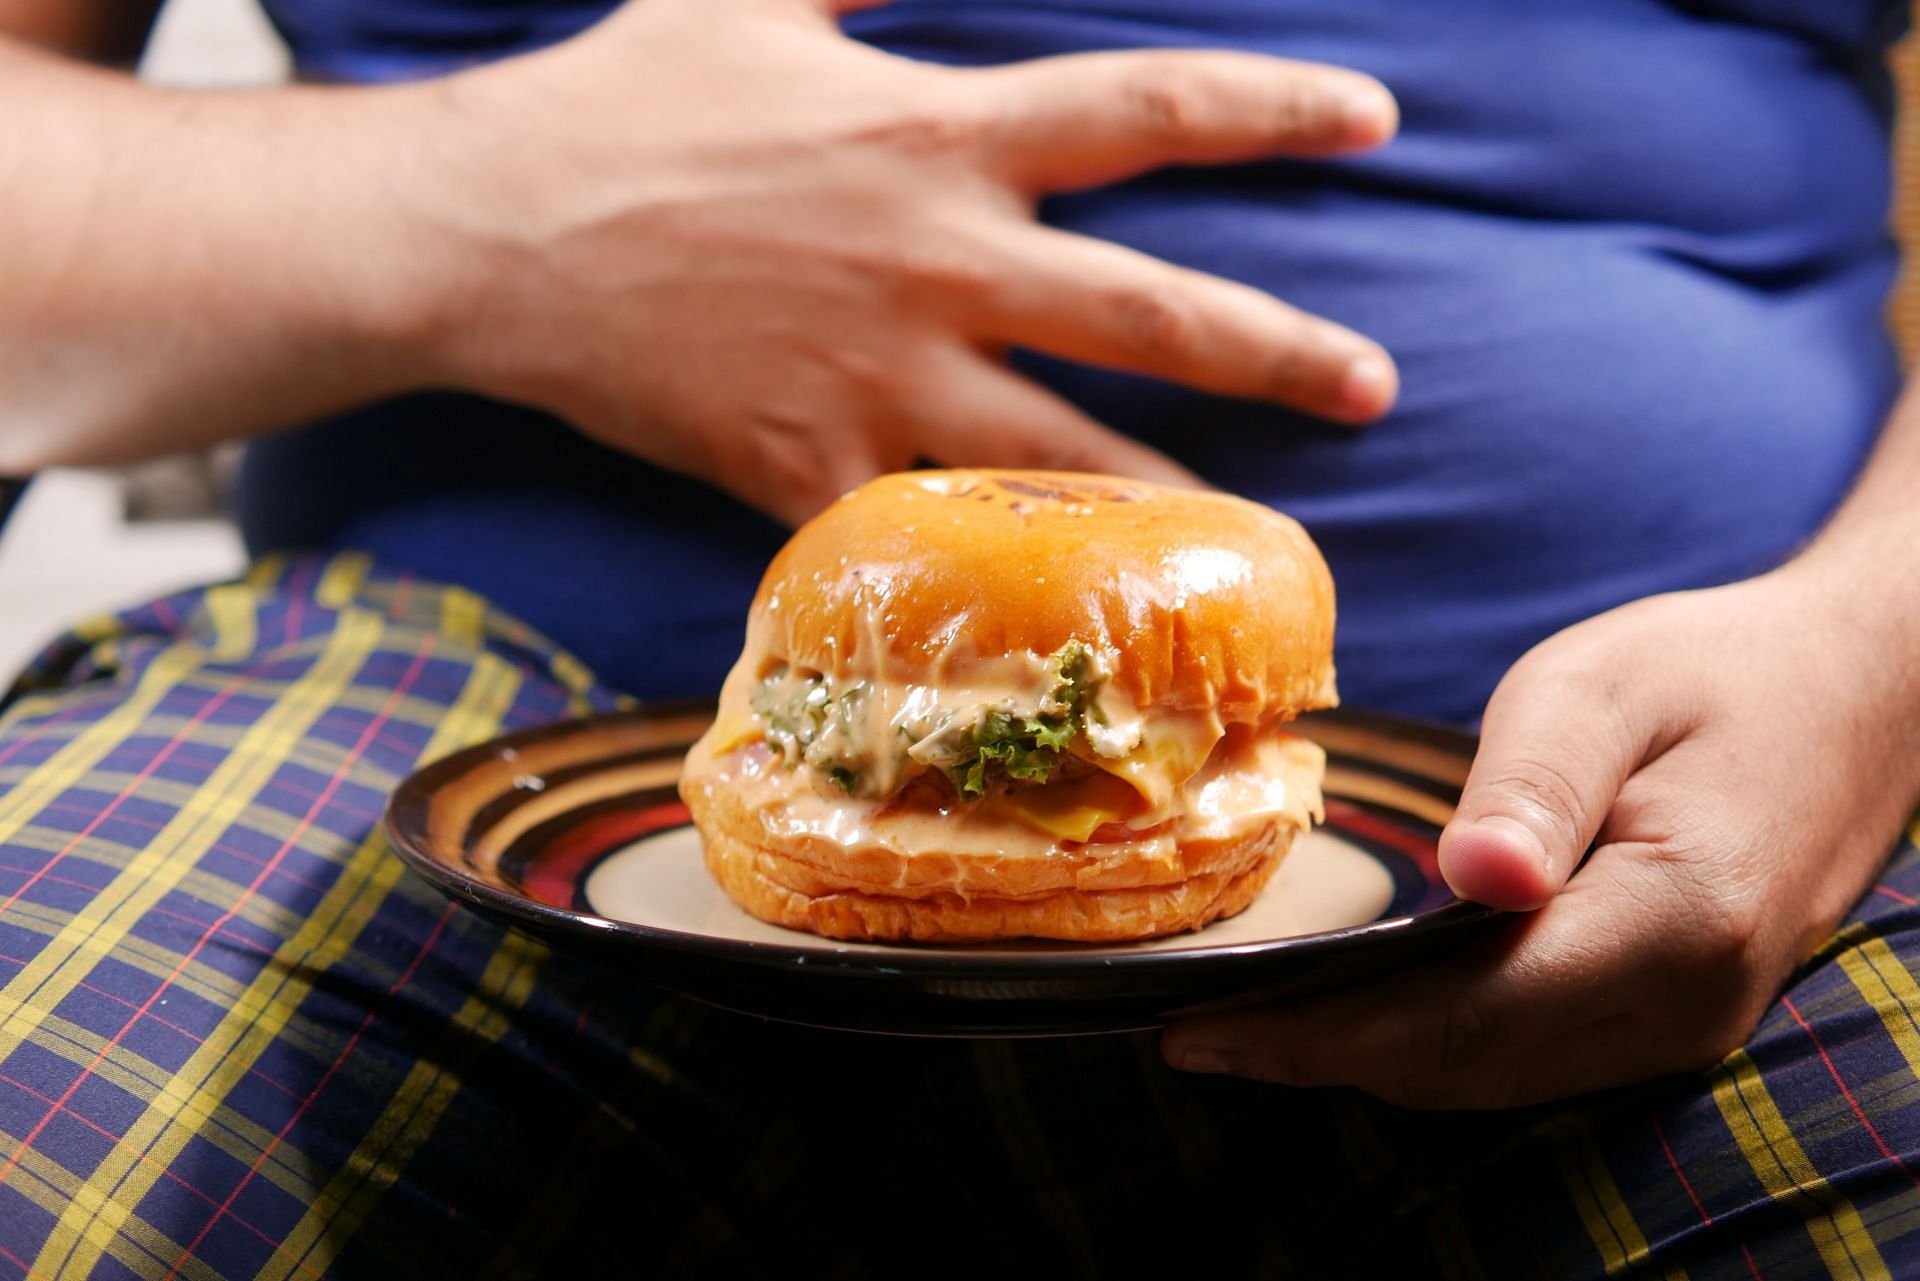 Junk food is discouraged in the Harvard diet. (Image via Unsplash/Towfiqu Barbhuiya)